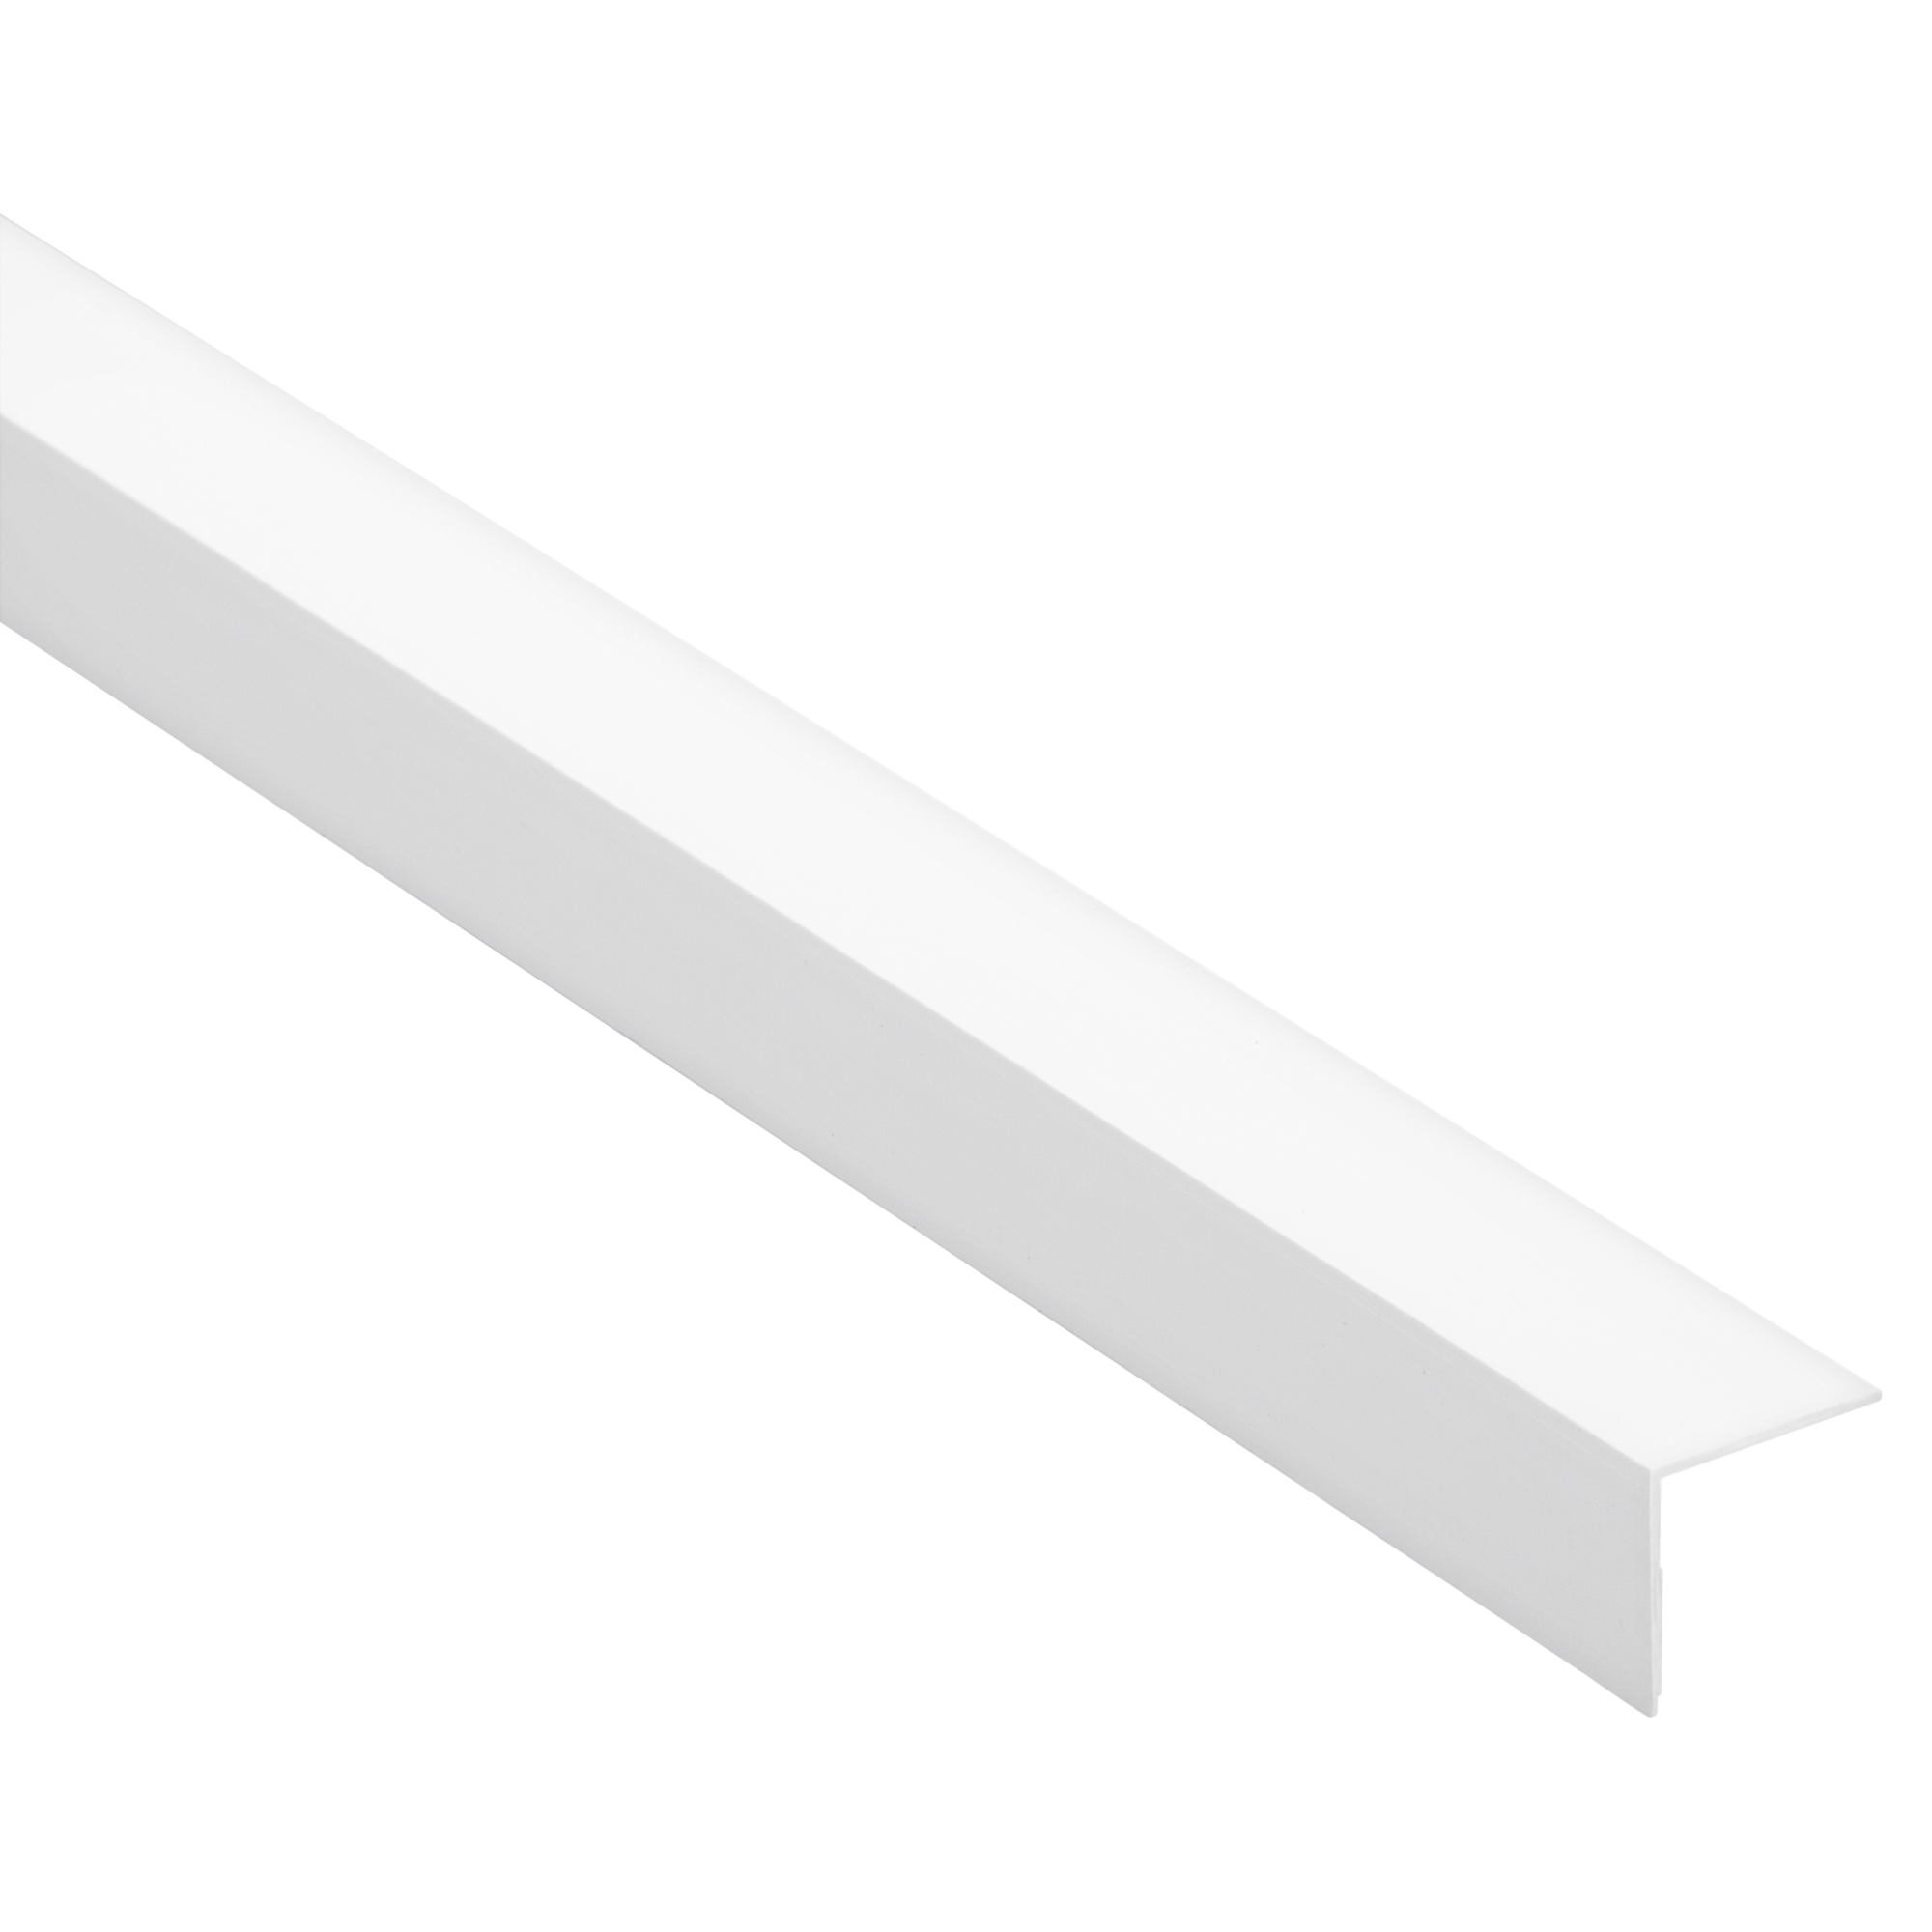 Selbstklebender Winkel 2 cm weiß glänzend + product picture